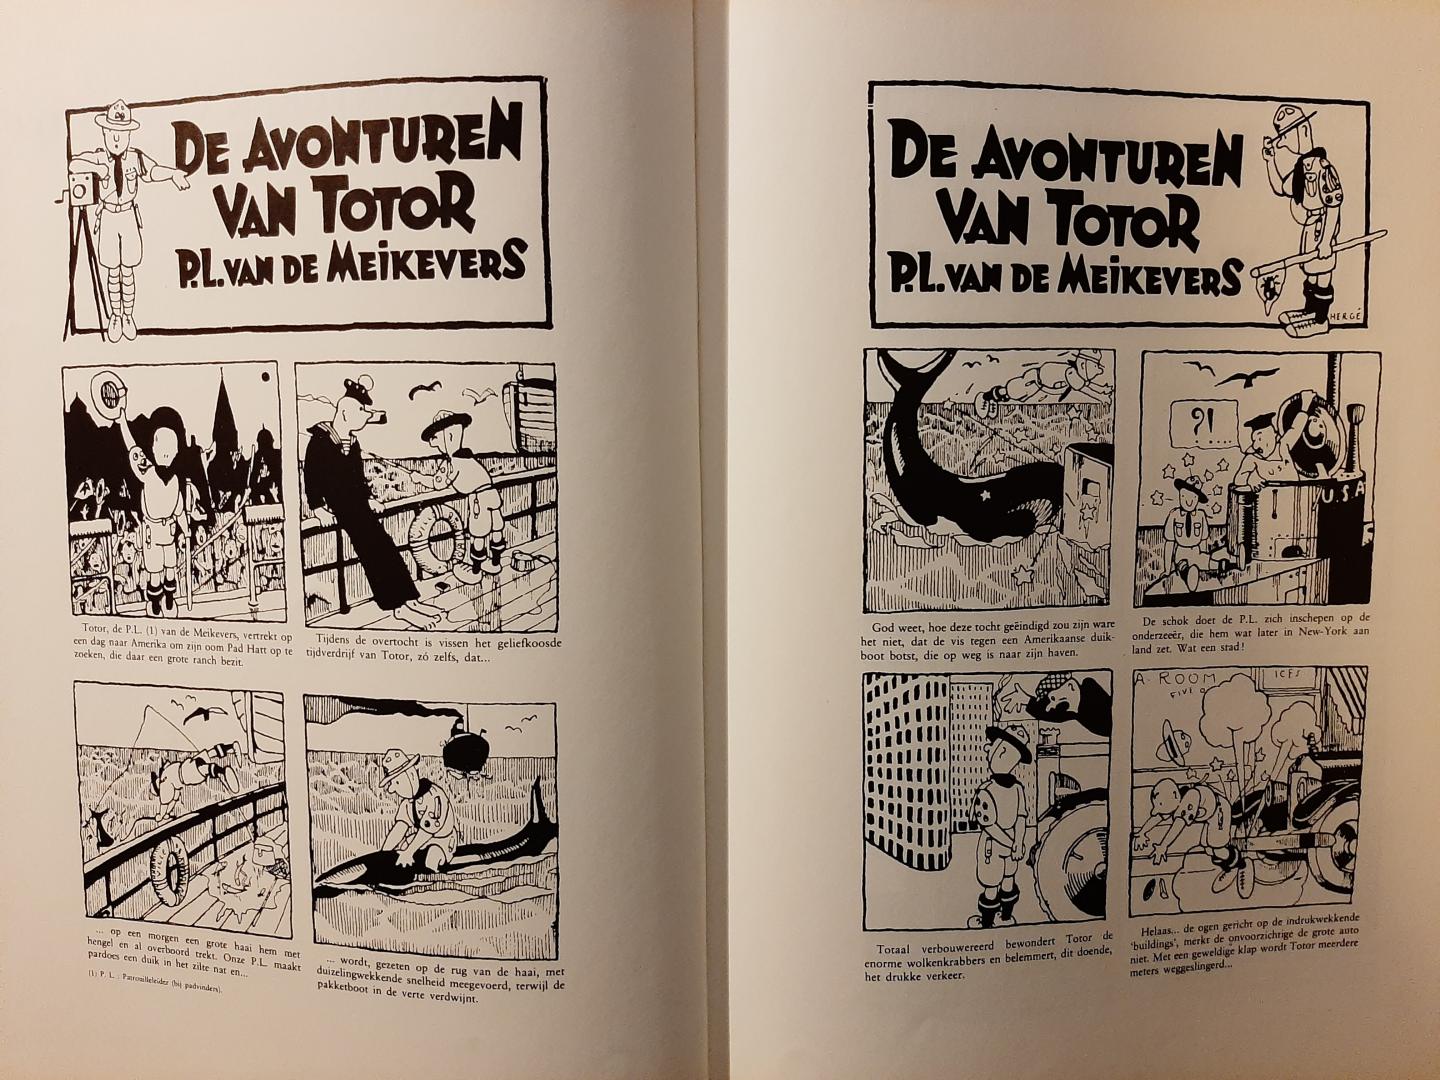 Hergé - Uit de archieven van Hergé. De avonturen van Totor en de originele versie van Kuifje in de Sovjetunie (1929)